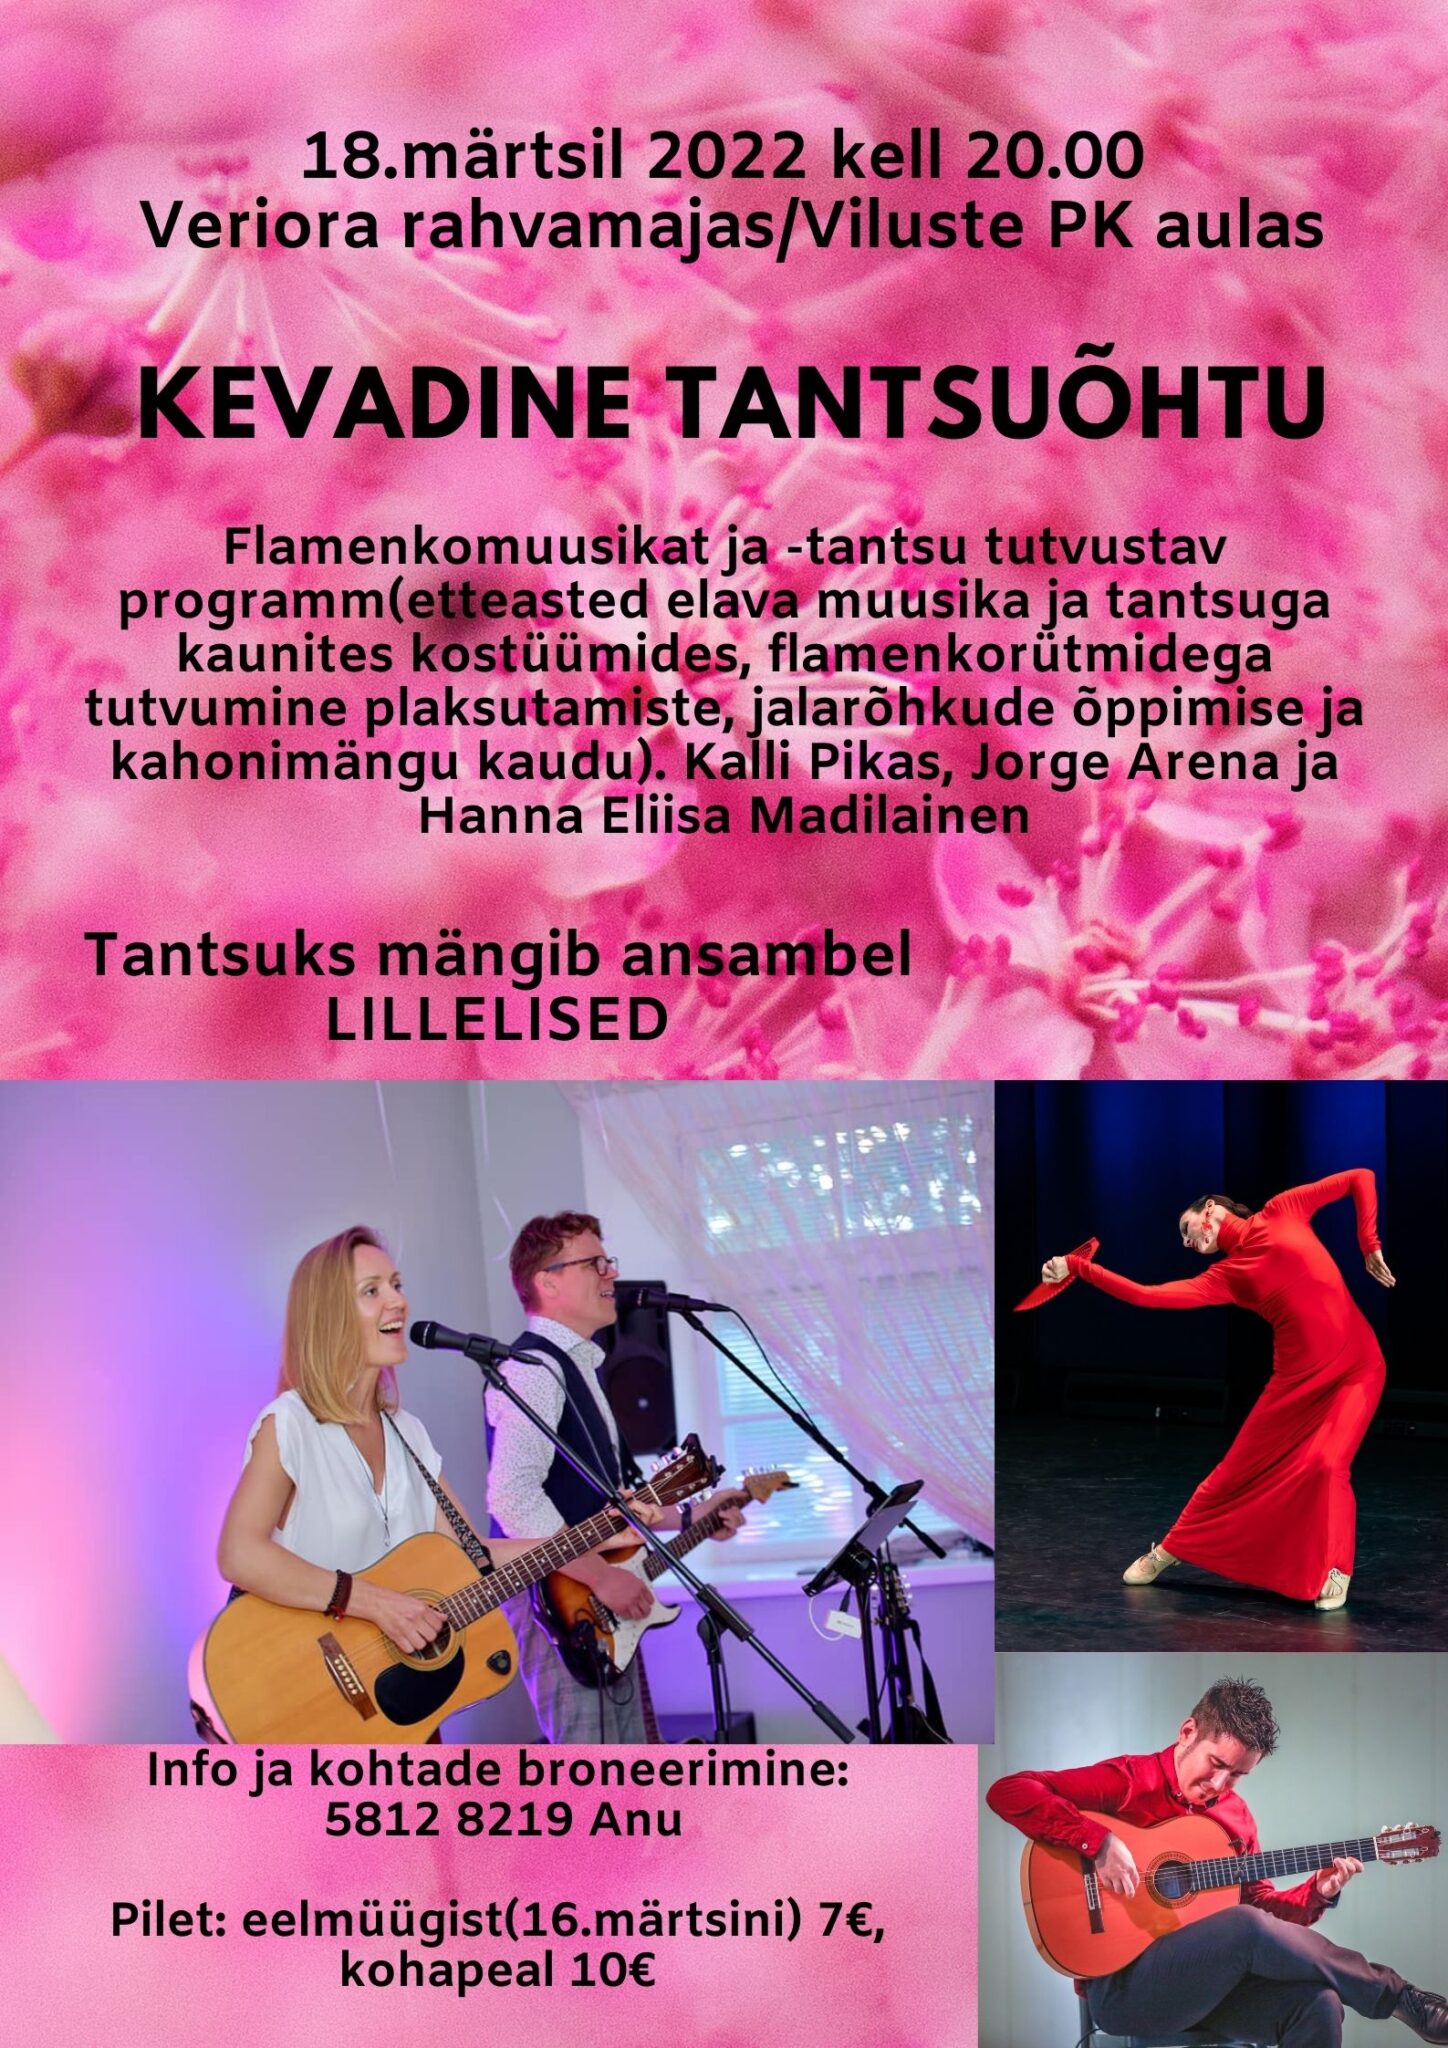 Kevadine tantsuõhtu Veriora rahvamajas @ Veriora rahvamaja | Viluste | Põlva maakond | Eesti